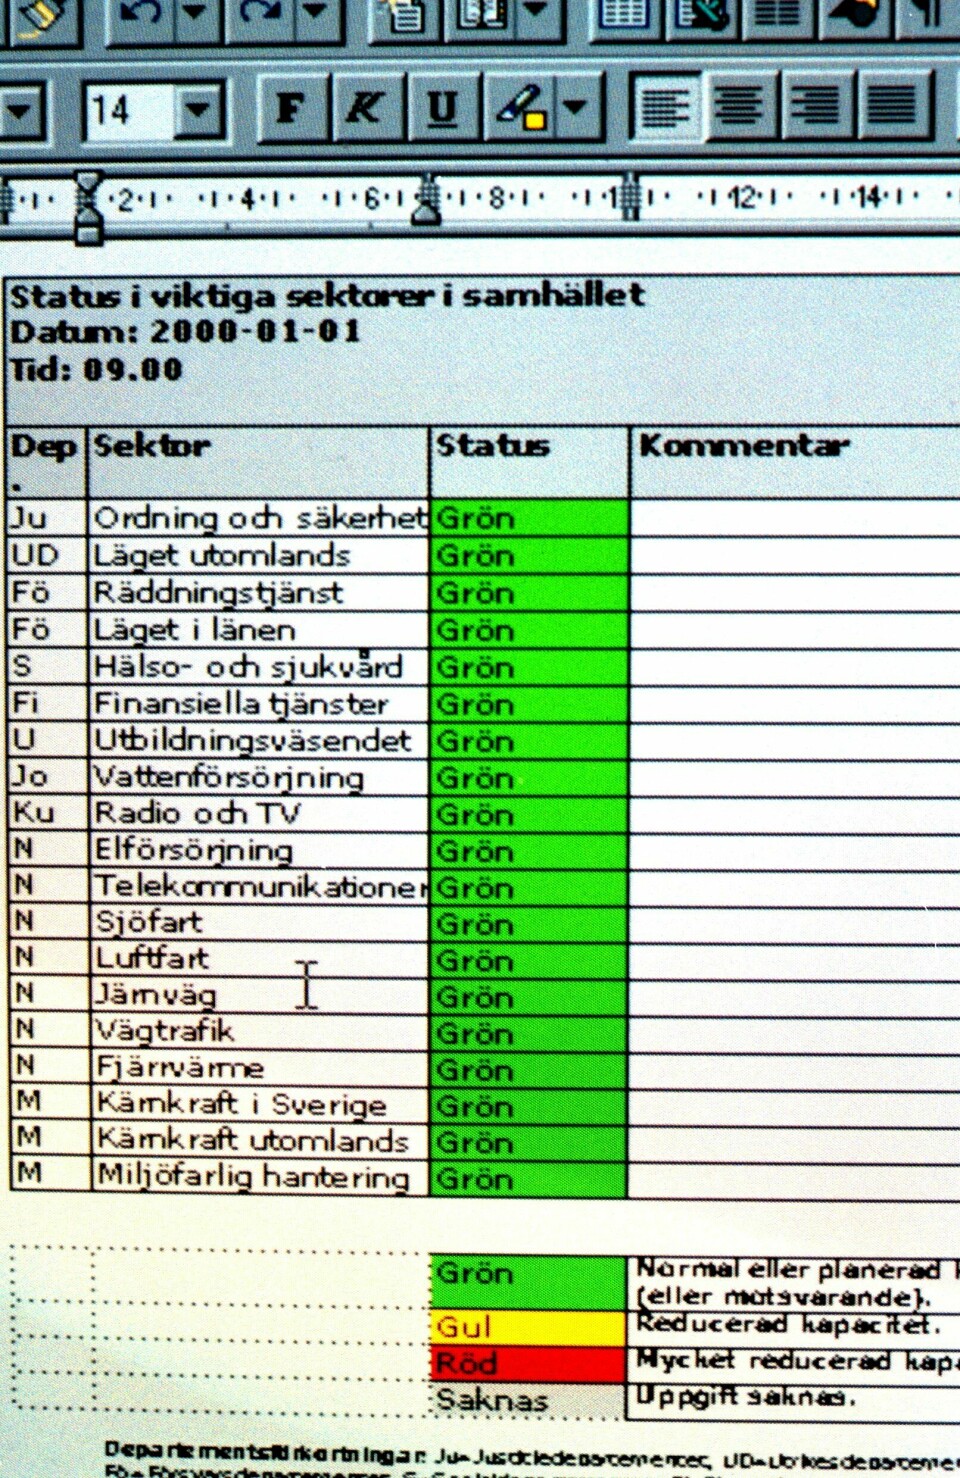 Skärmdump från Näringsdepartementet 1 januari 2000 som visar statusen på viktiga sektorer i samhället, där de idel gröna staplarna visar att farhågorna för en millenniebugg var grundlösa.